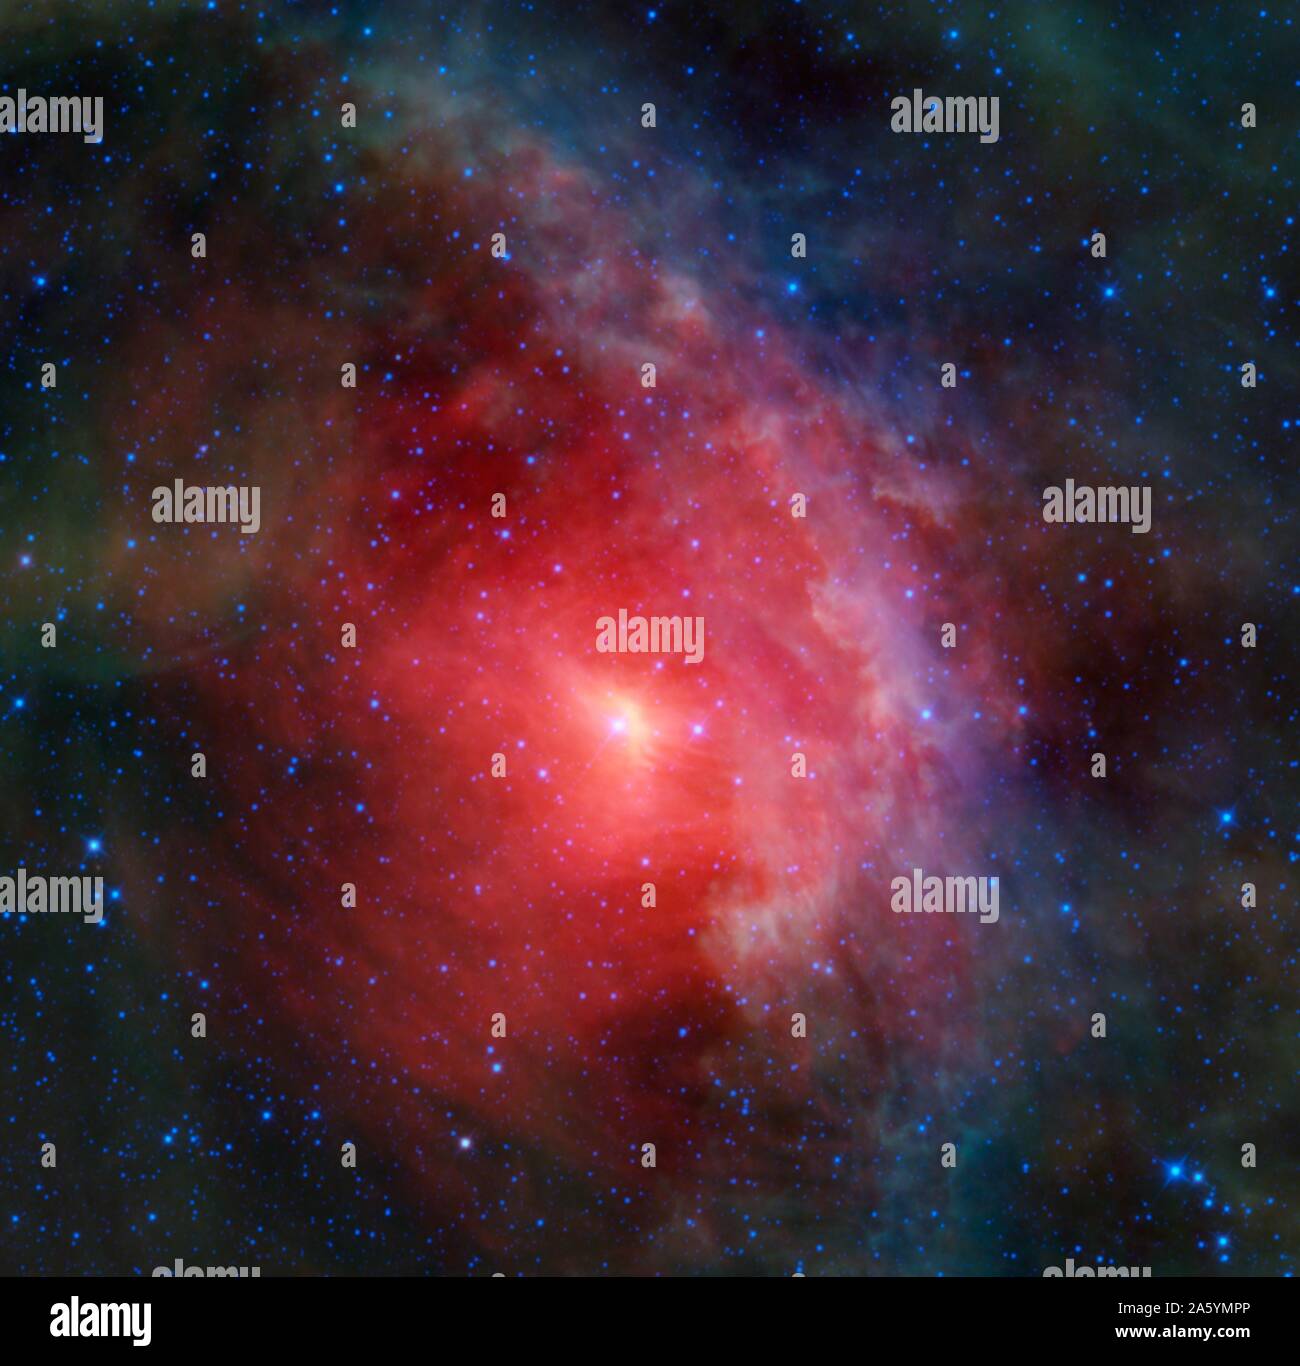 Le nuage de Rho Ophiuchi complexe de la NASA est sage. Le nuage de Rho Ophiuchi est trouvé l'augmentation au-dessus du plan de la Voie lactée dans le ciel nocturne, en bordure de l'Ophiuchus constellations et Scorpius. C'est l'une des régions d'étoiles en formation le plus proche de la Terre. Banque D'Images